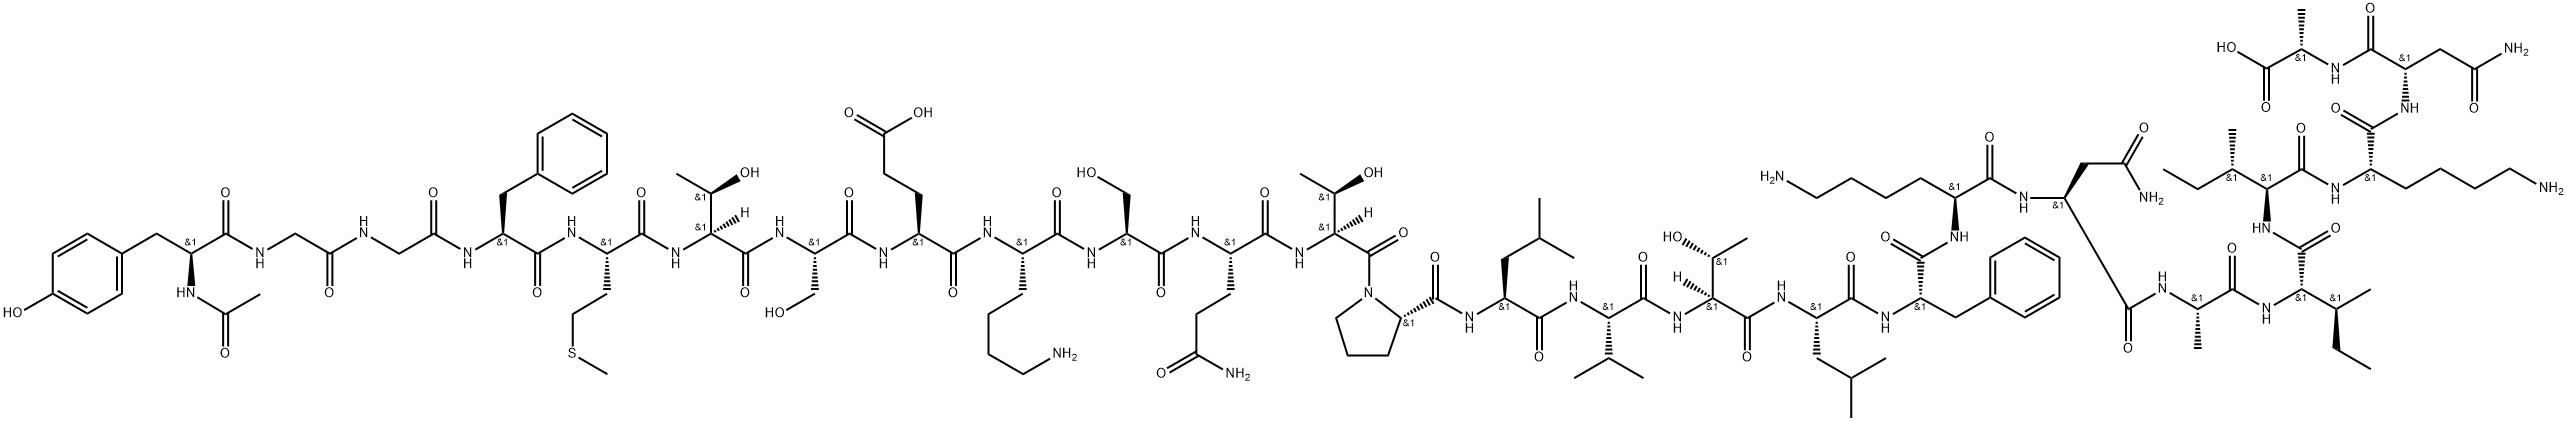 알파-N-아세틸베타-엔돌핀(1-26) 구조식 이미지